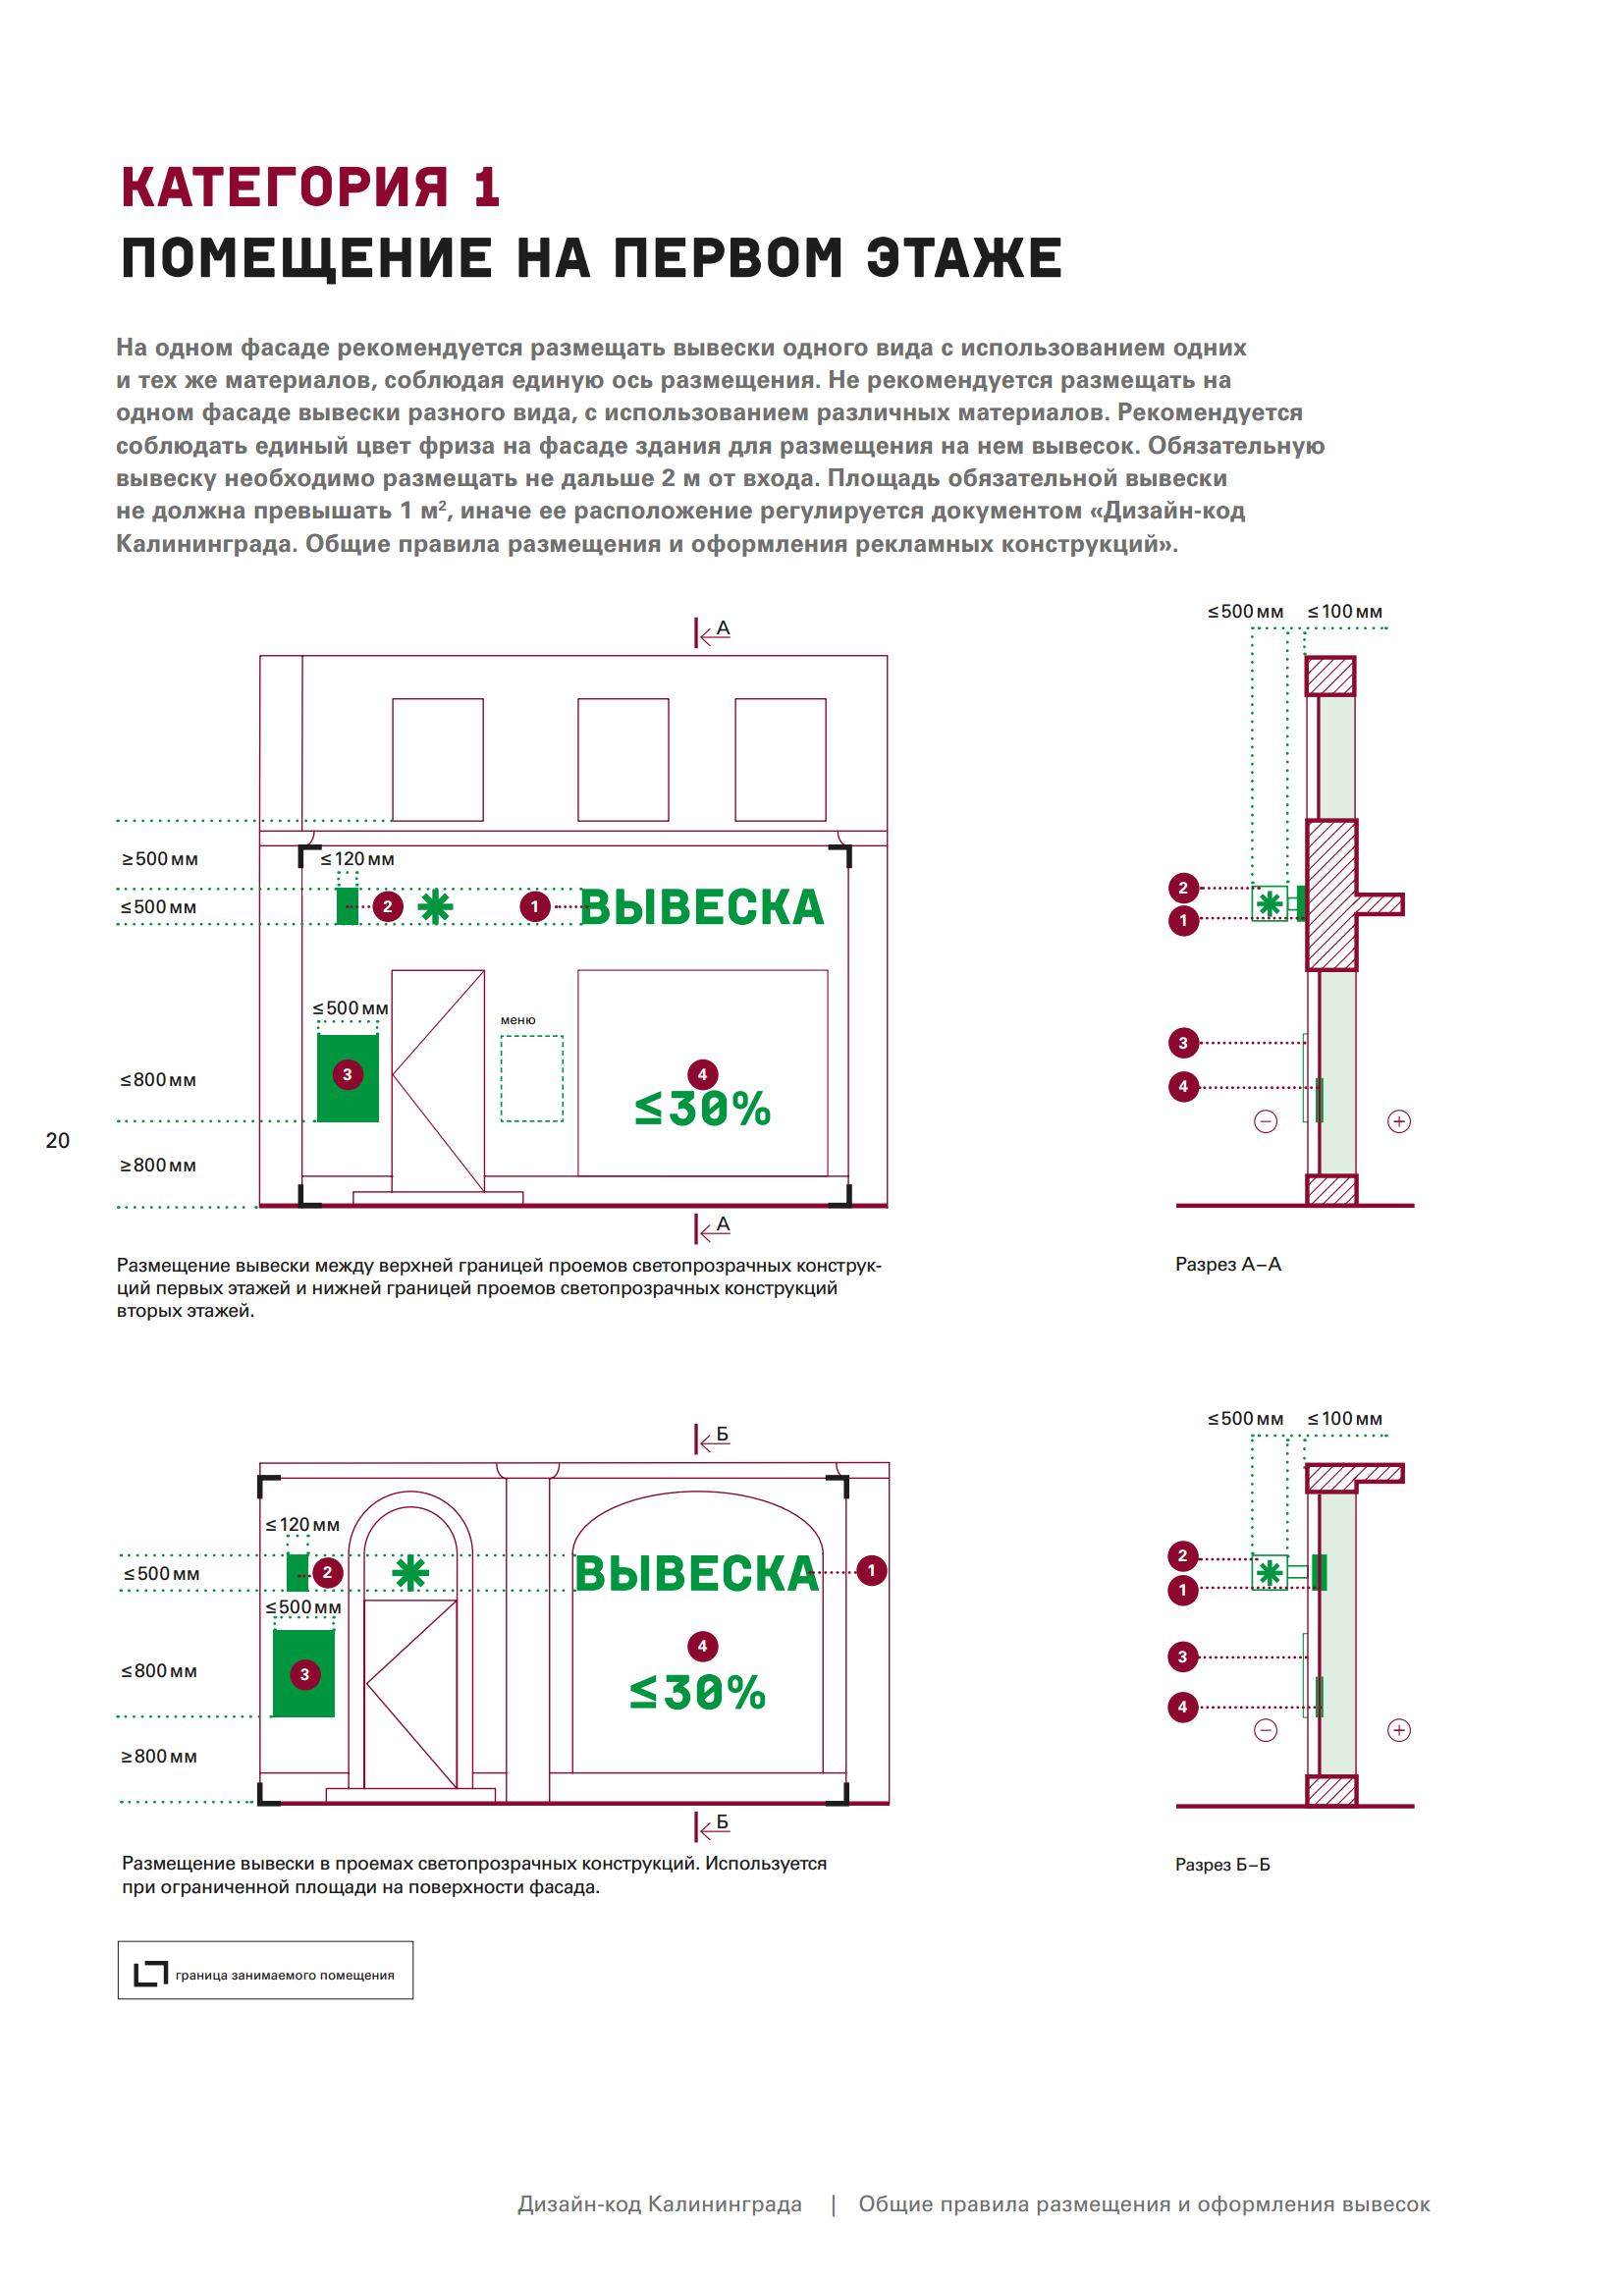 Дизайн-код Калининграда. Общие правила размещения и оформления вывесок